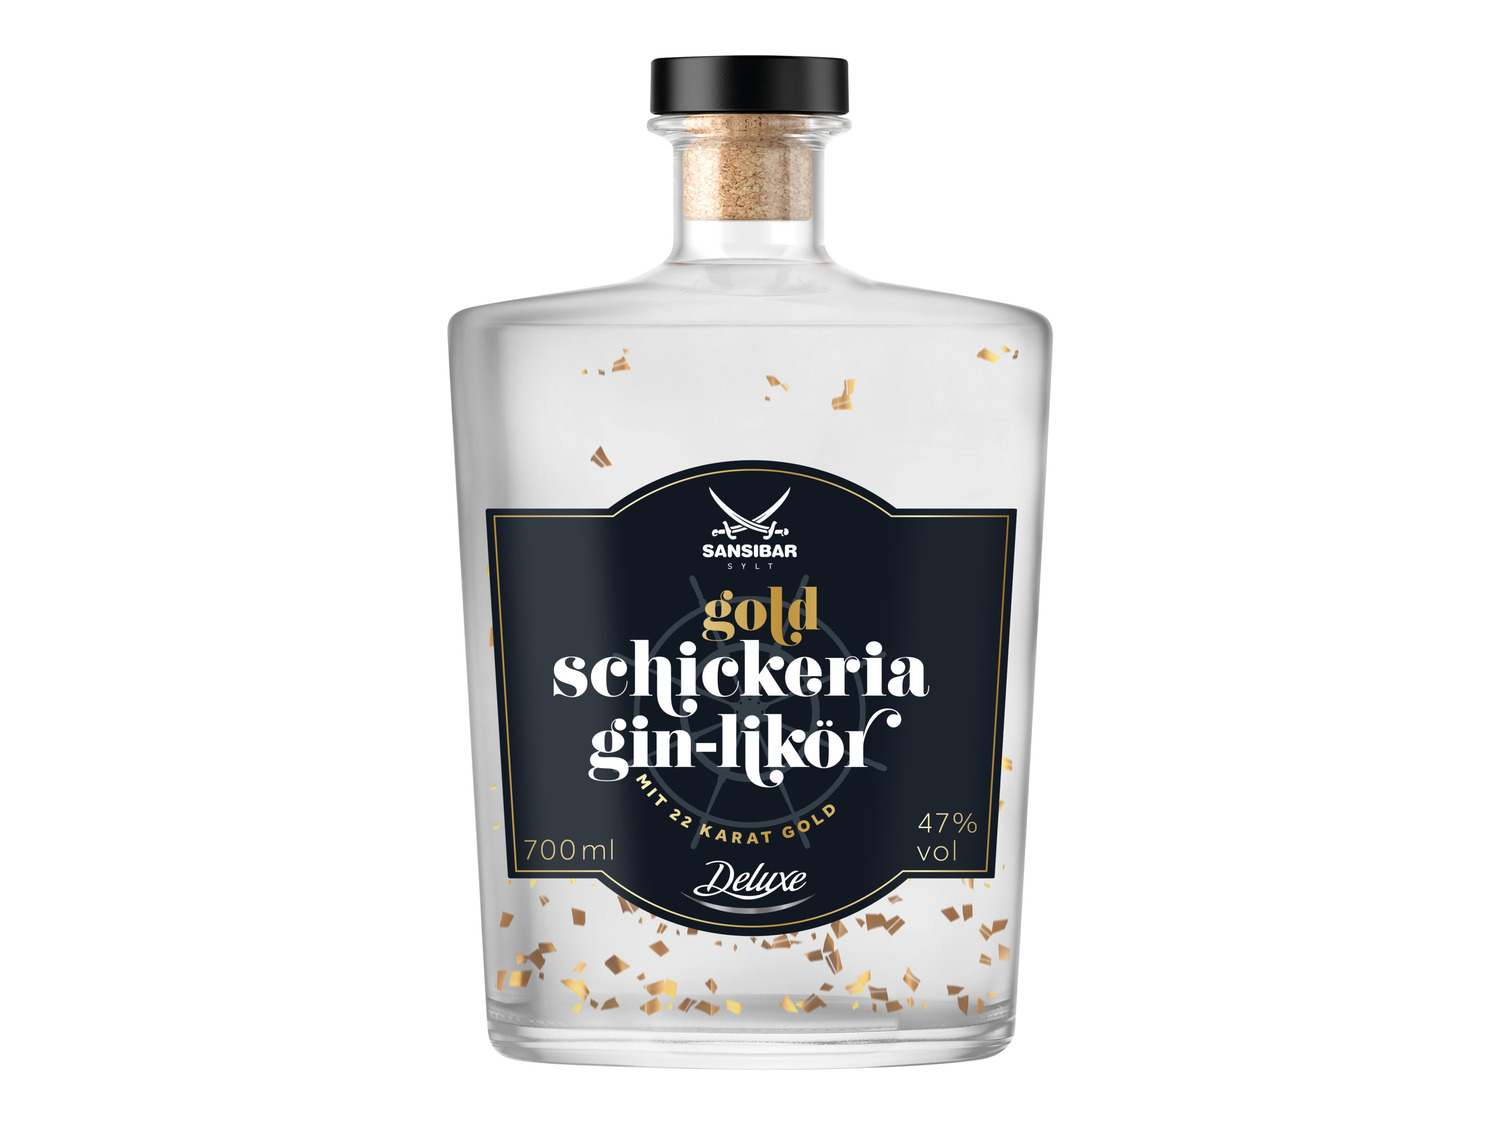 Vol mit 47% LIDL | Gin-Likör Schickeria Gold SANSIBAR